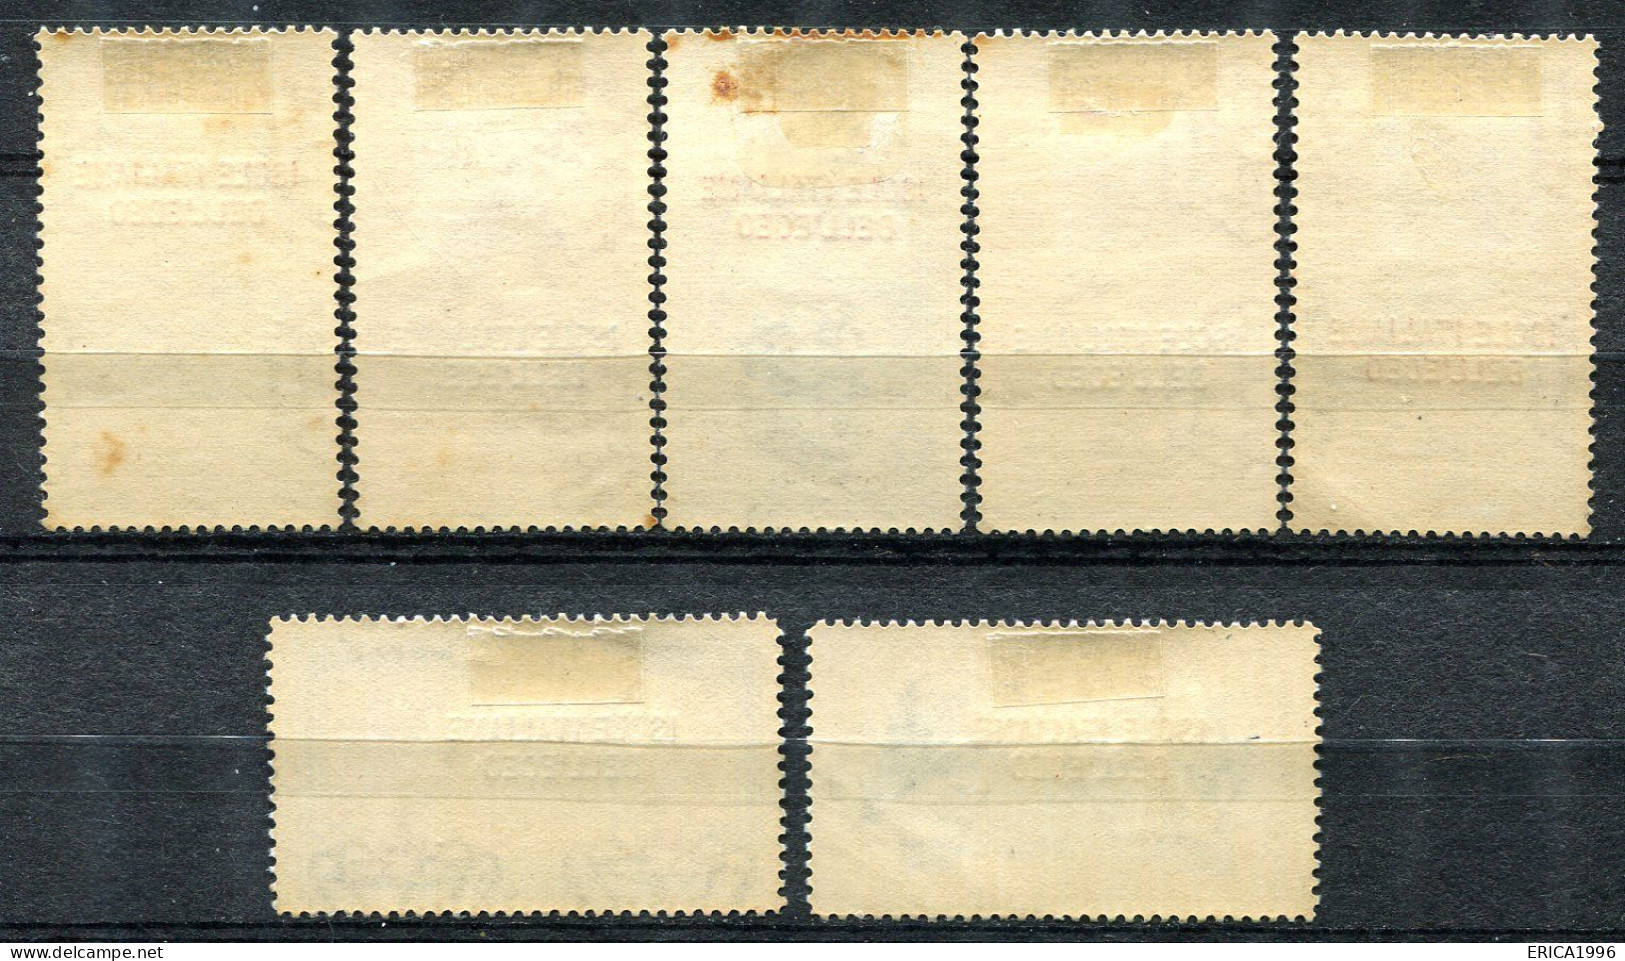 Z3686 ITALIA COLONIE ISOLE DELL'EGEO 1932 Garibaldi, Posta Aerea, MH*, Serie Completa, Valore Catalogo Sassone € 1000, 1 - Aegean